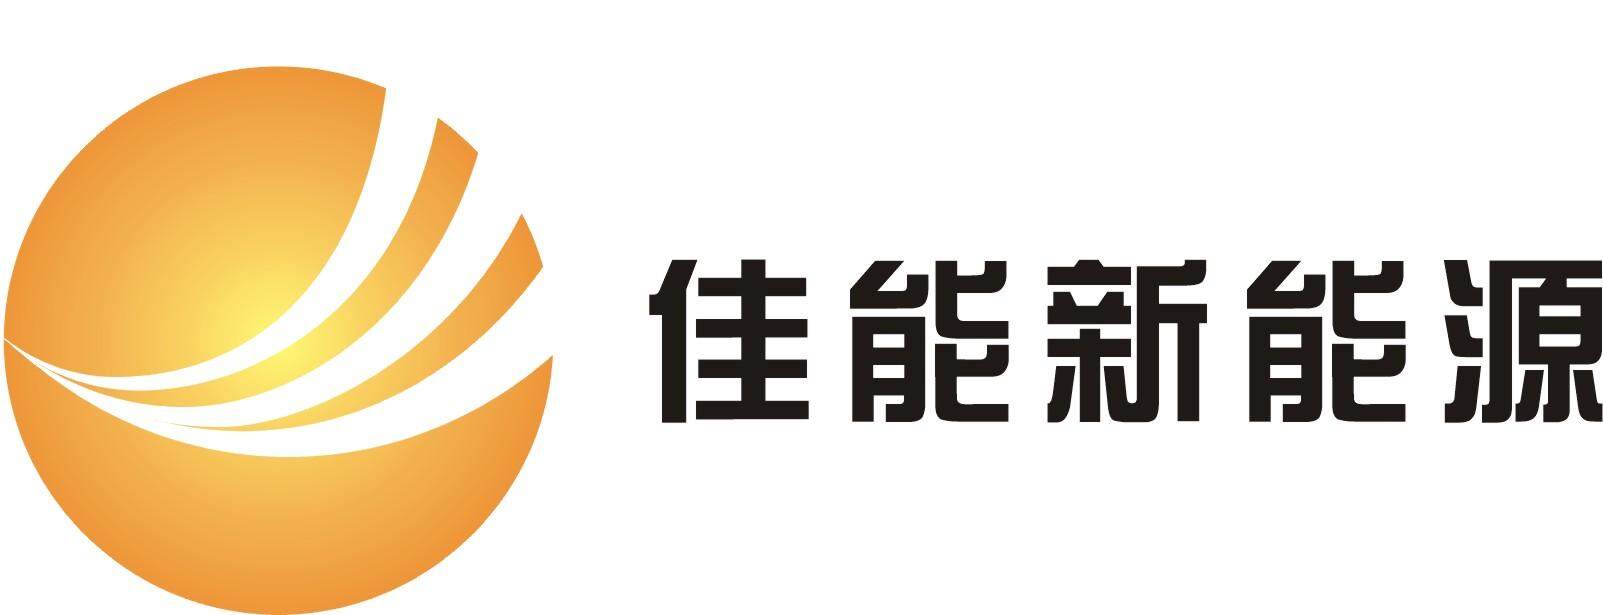 江西佳能新能源发展有限公司logo